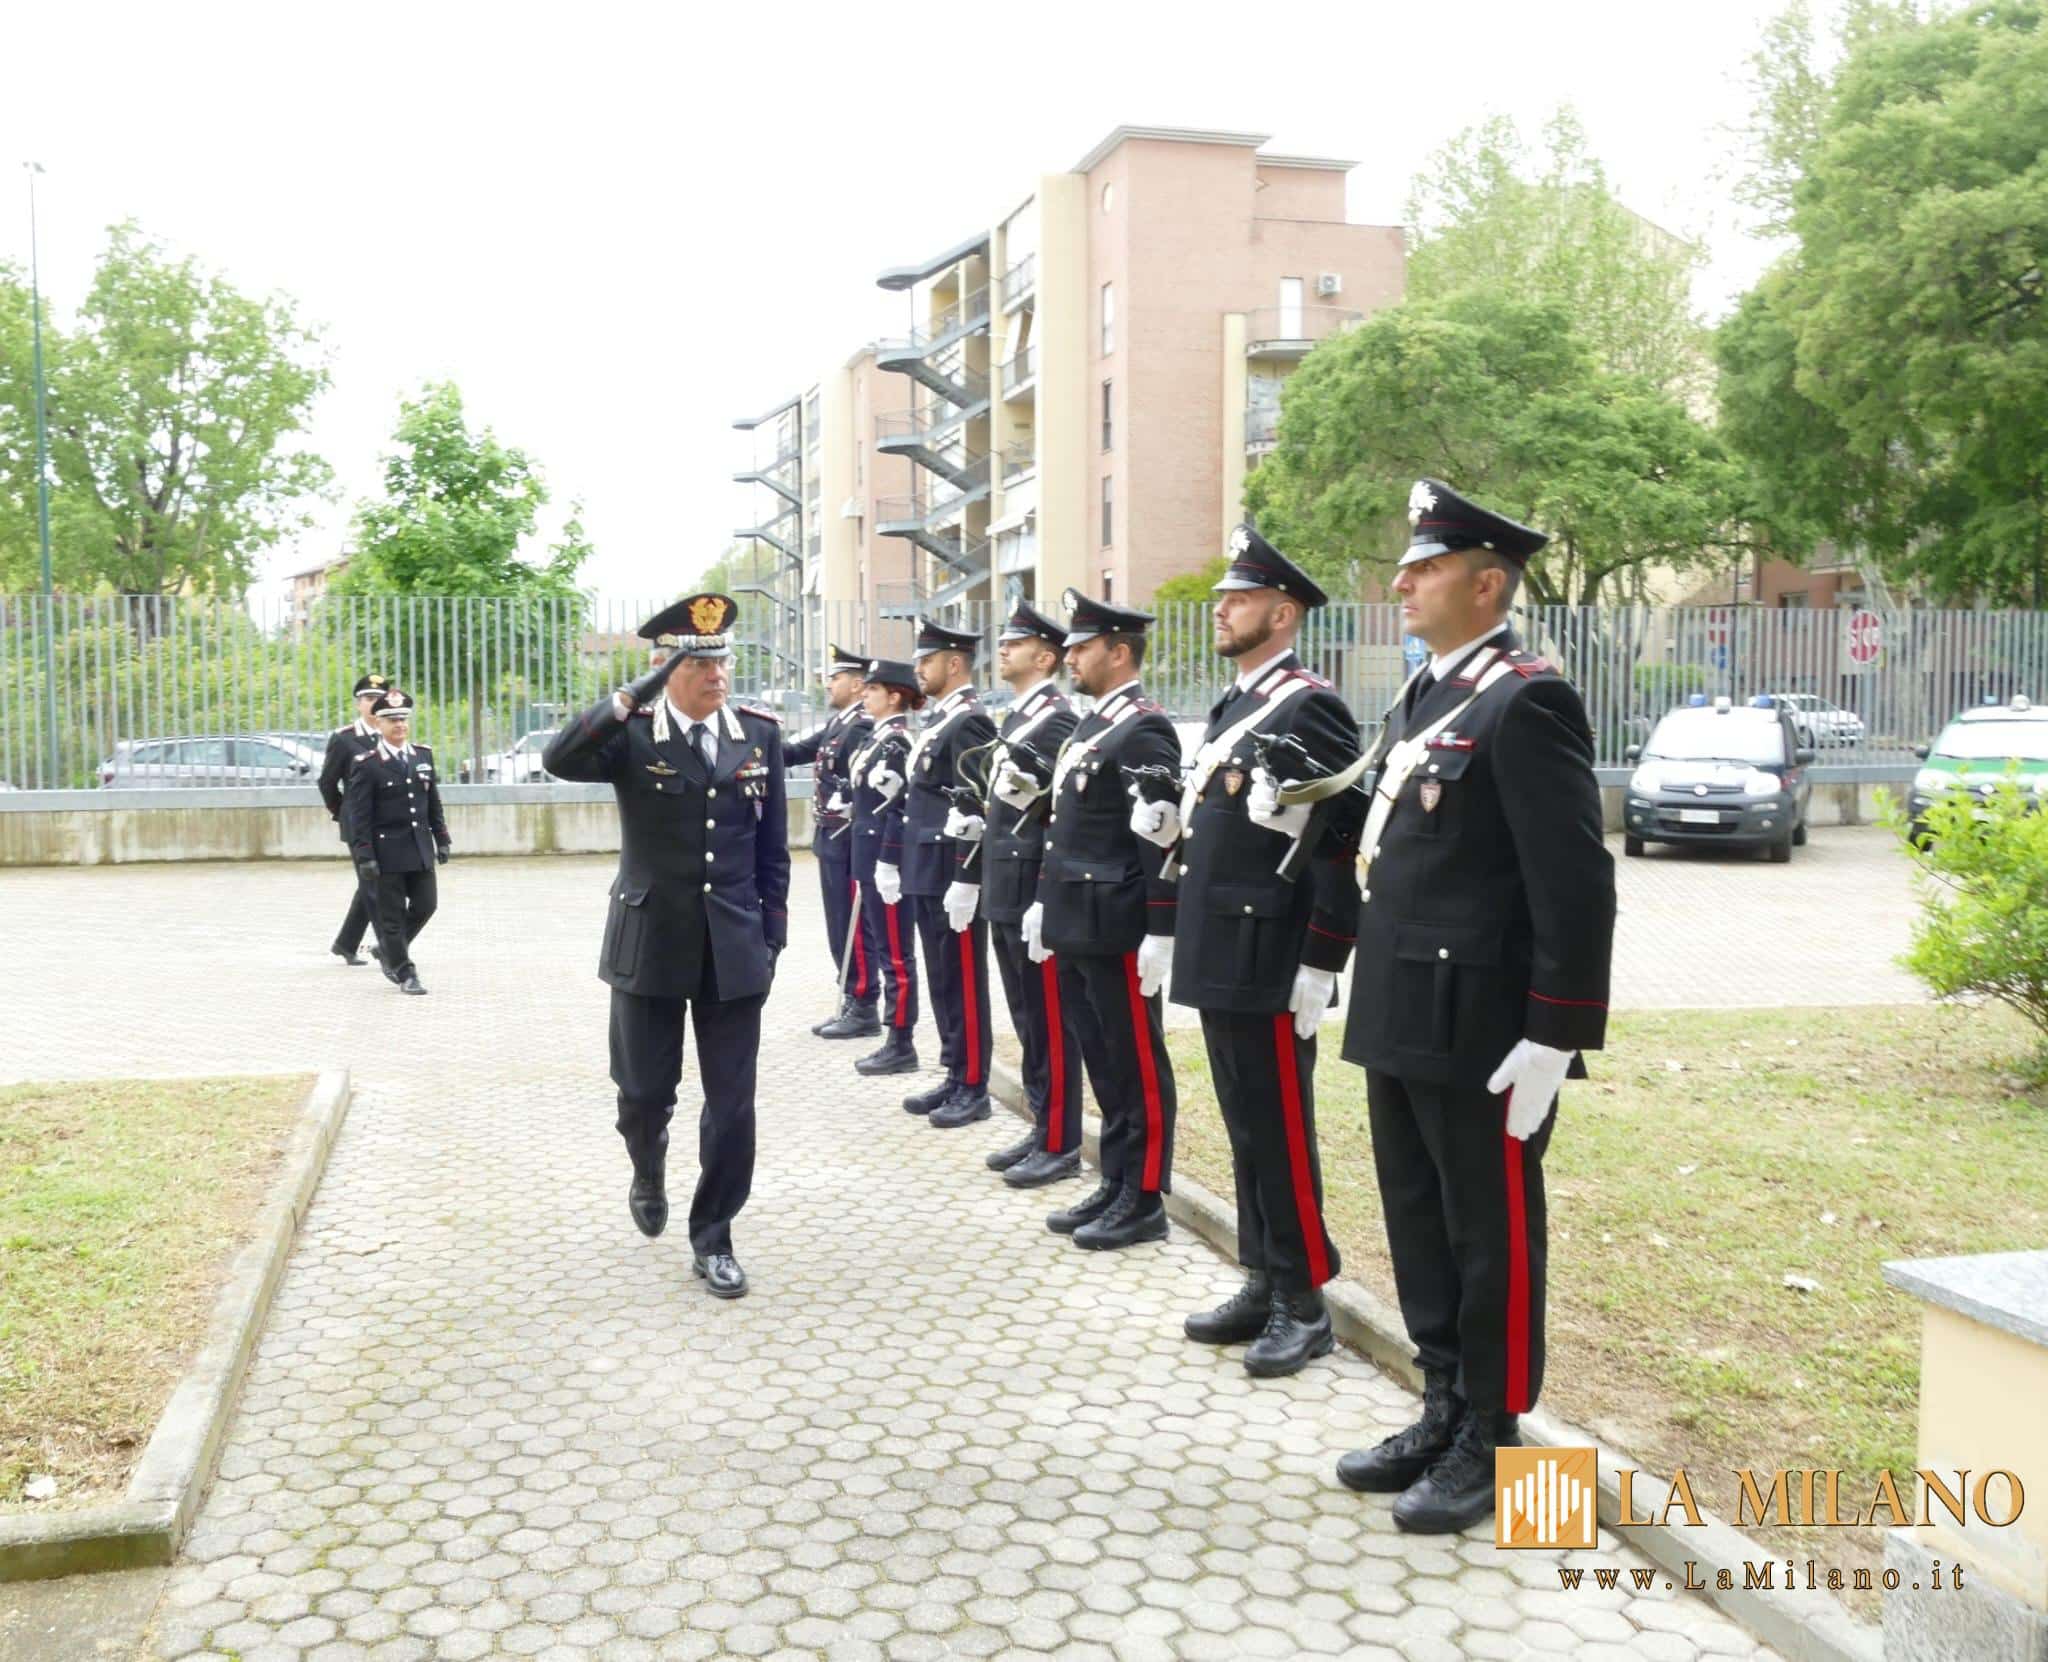 Piemonte, il Generale di Corpo d'Armata Andrea Rispoli in visita ai Carabinieri Forestali di Alessandria e Asti